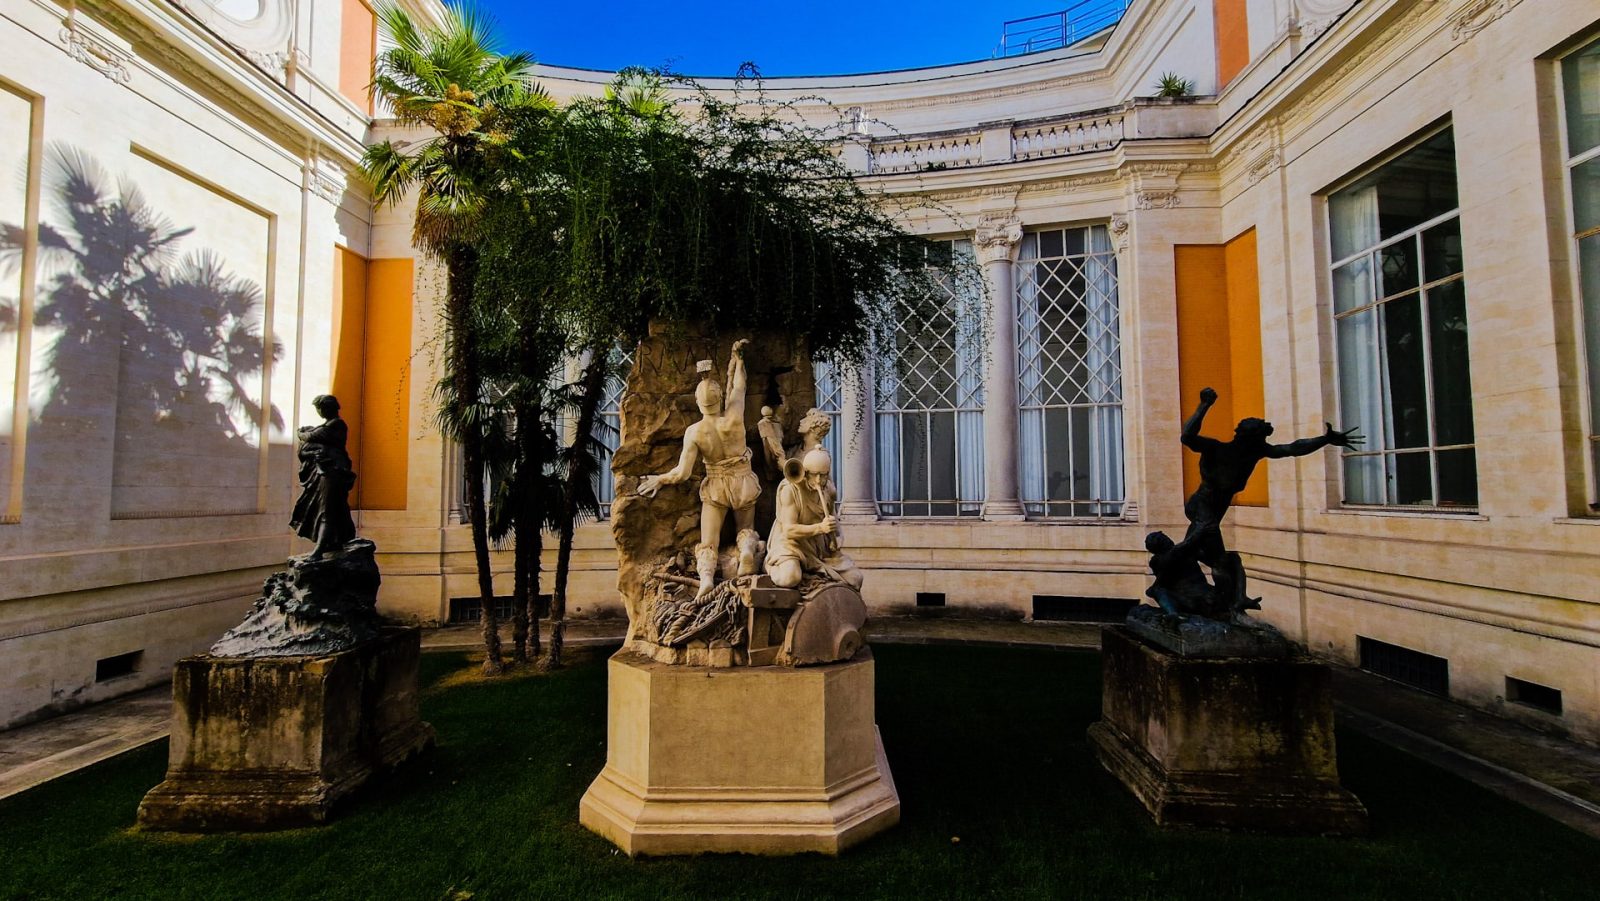 Visitar la Galería Nacional de Arte Moderno y Contemporáneo de Roma